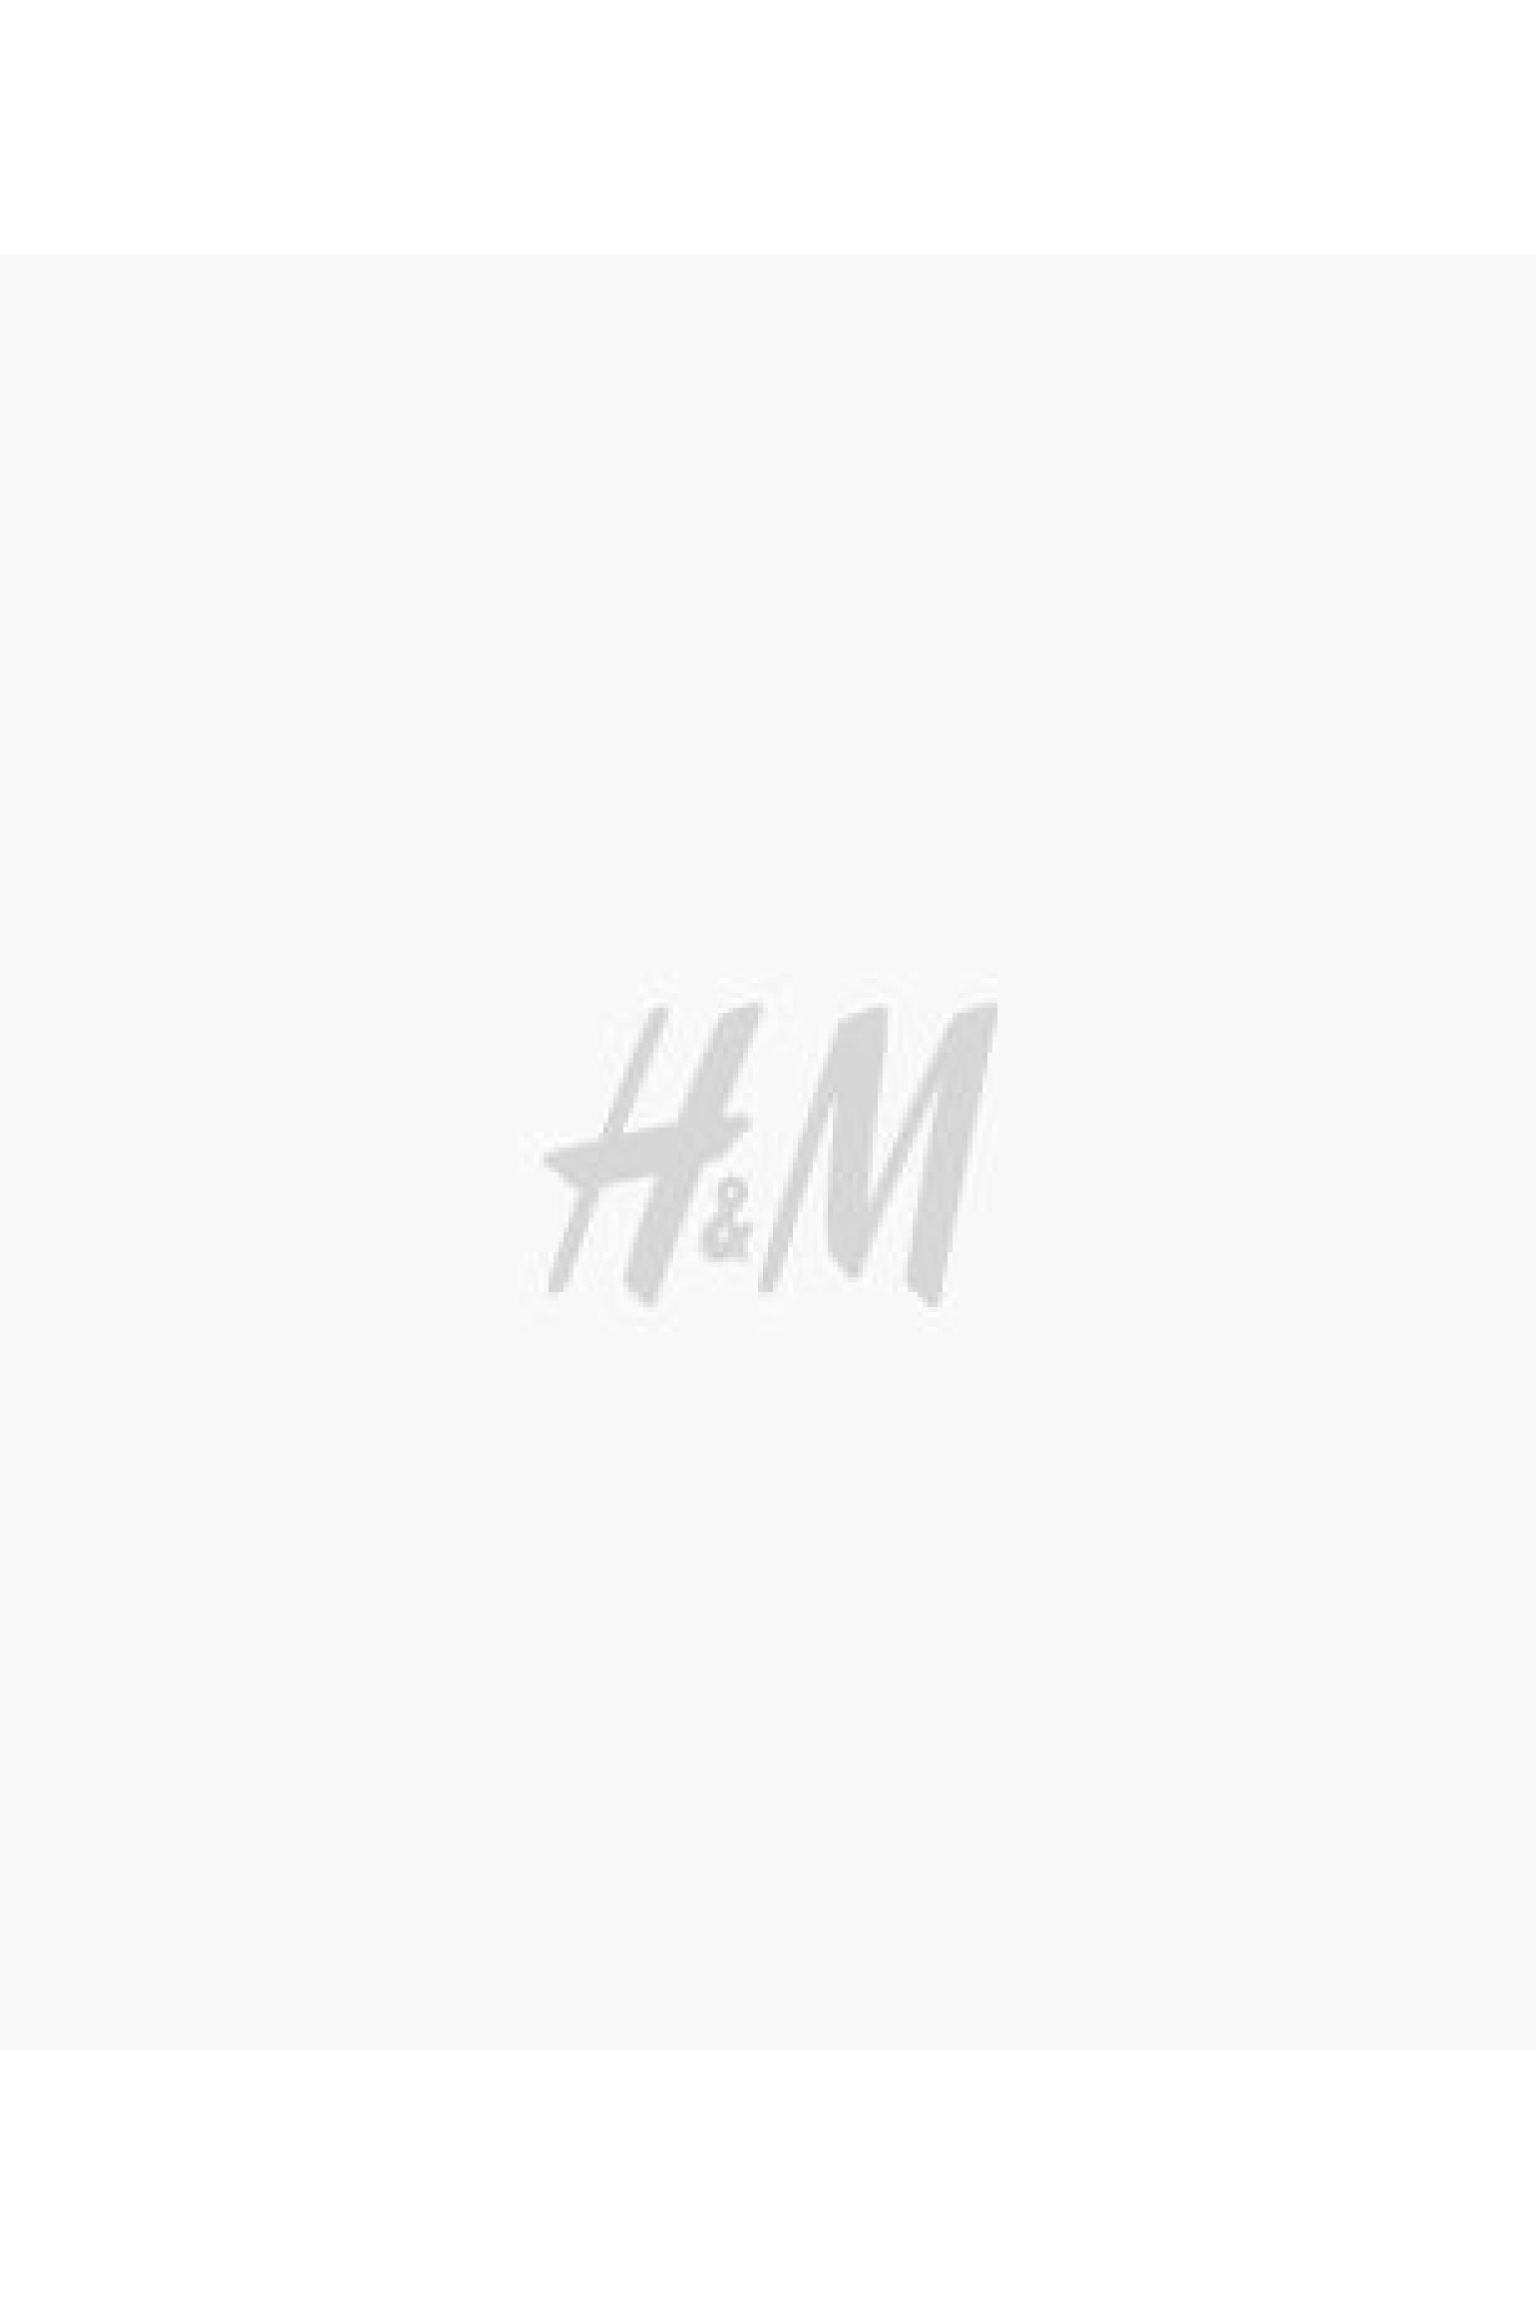 에이치앤엠 H&M Essentials No 2: THE JEANS